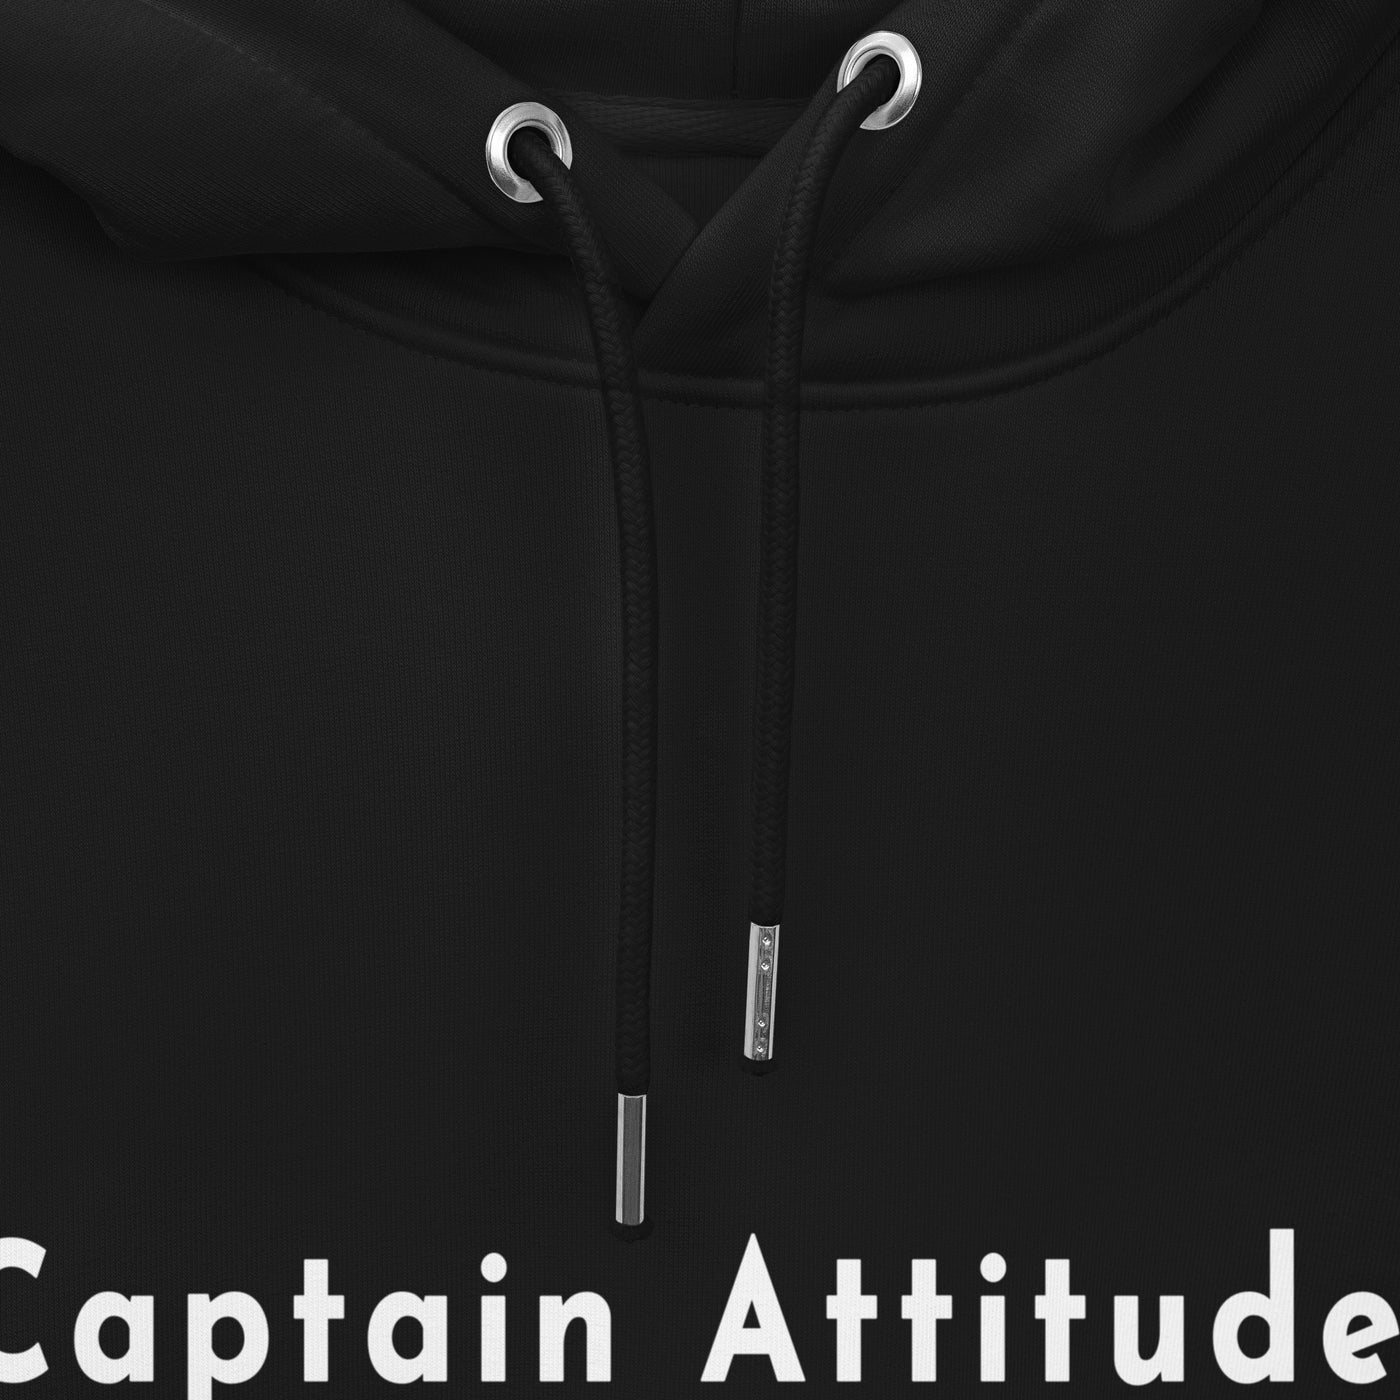 Captain Attitude Hoodie